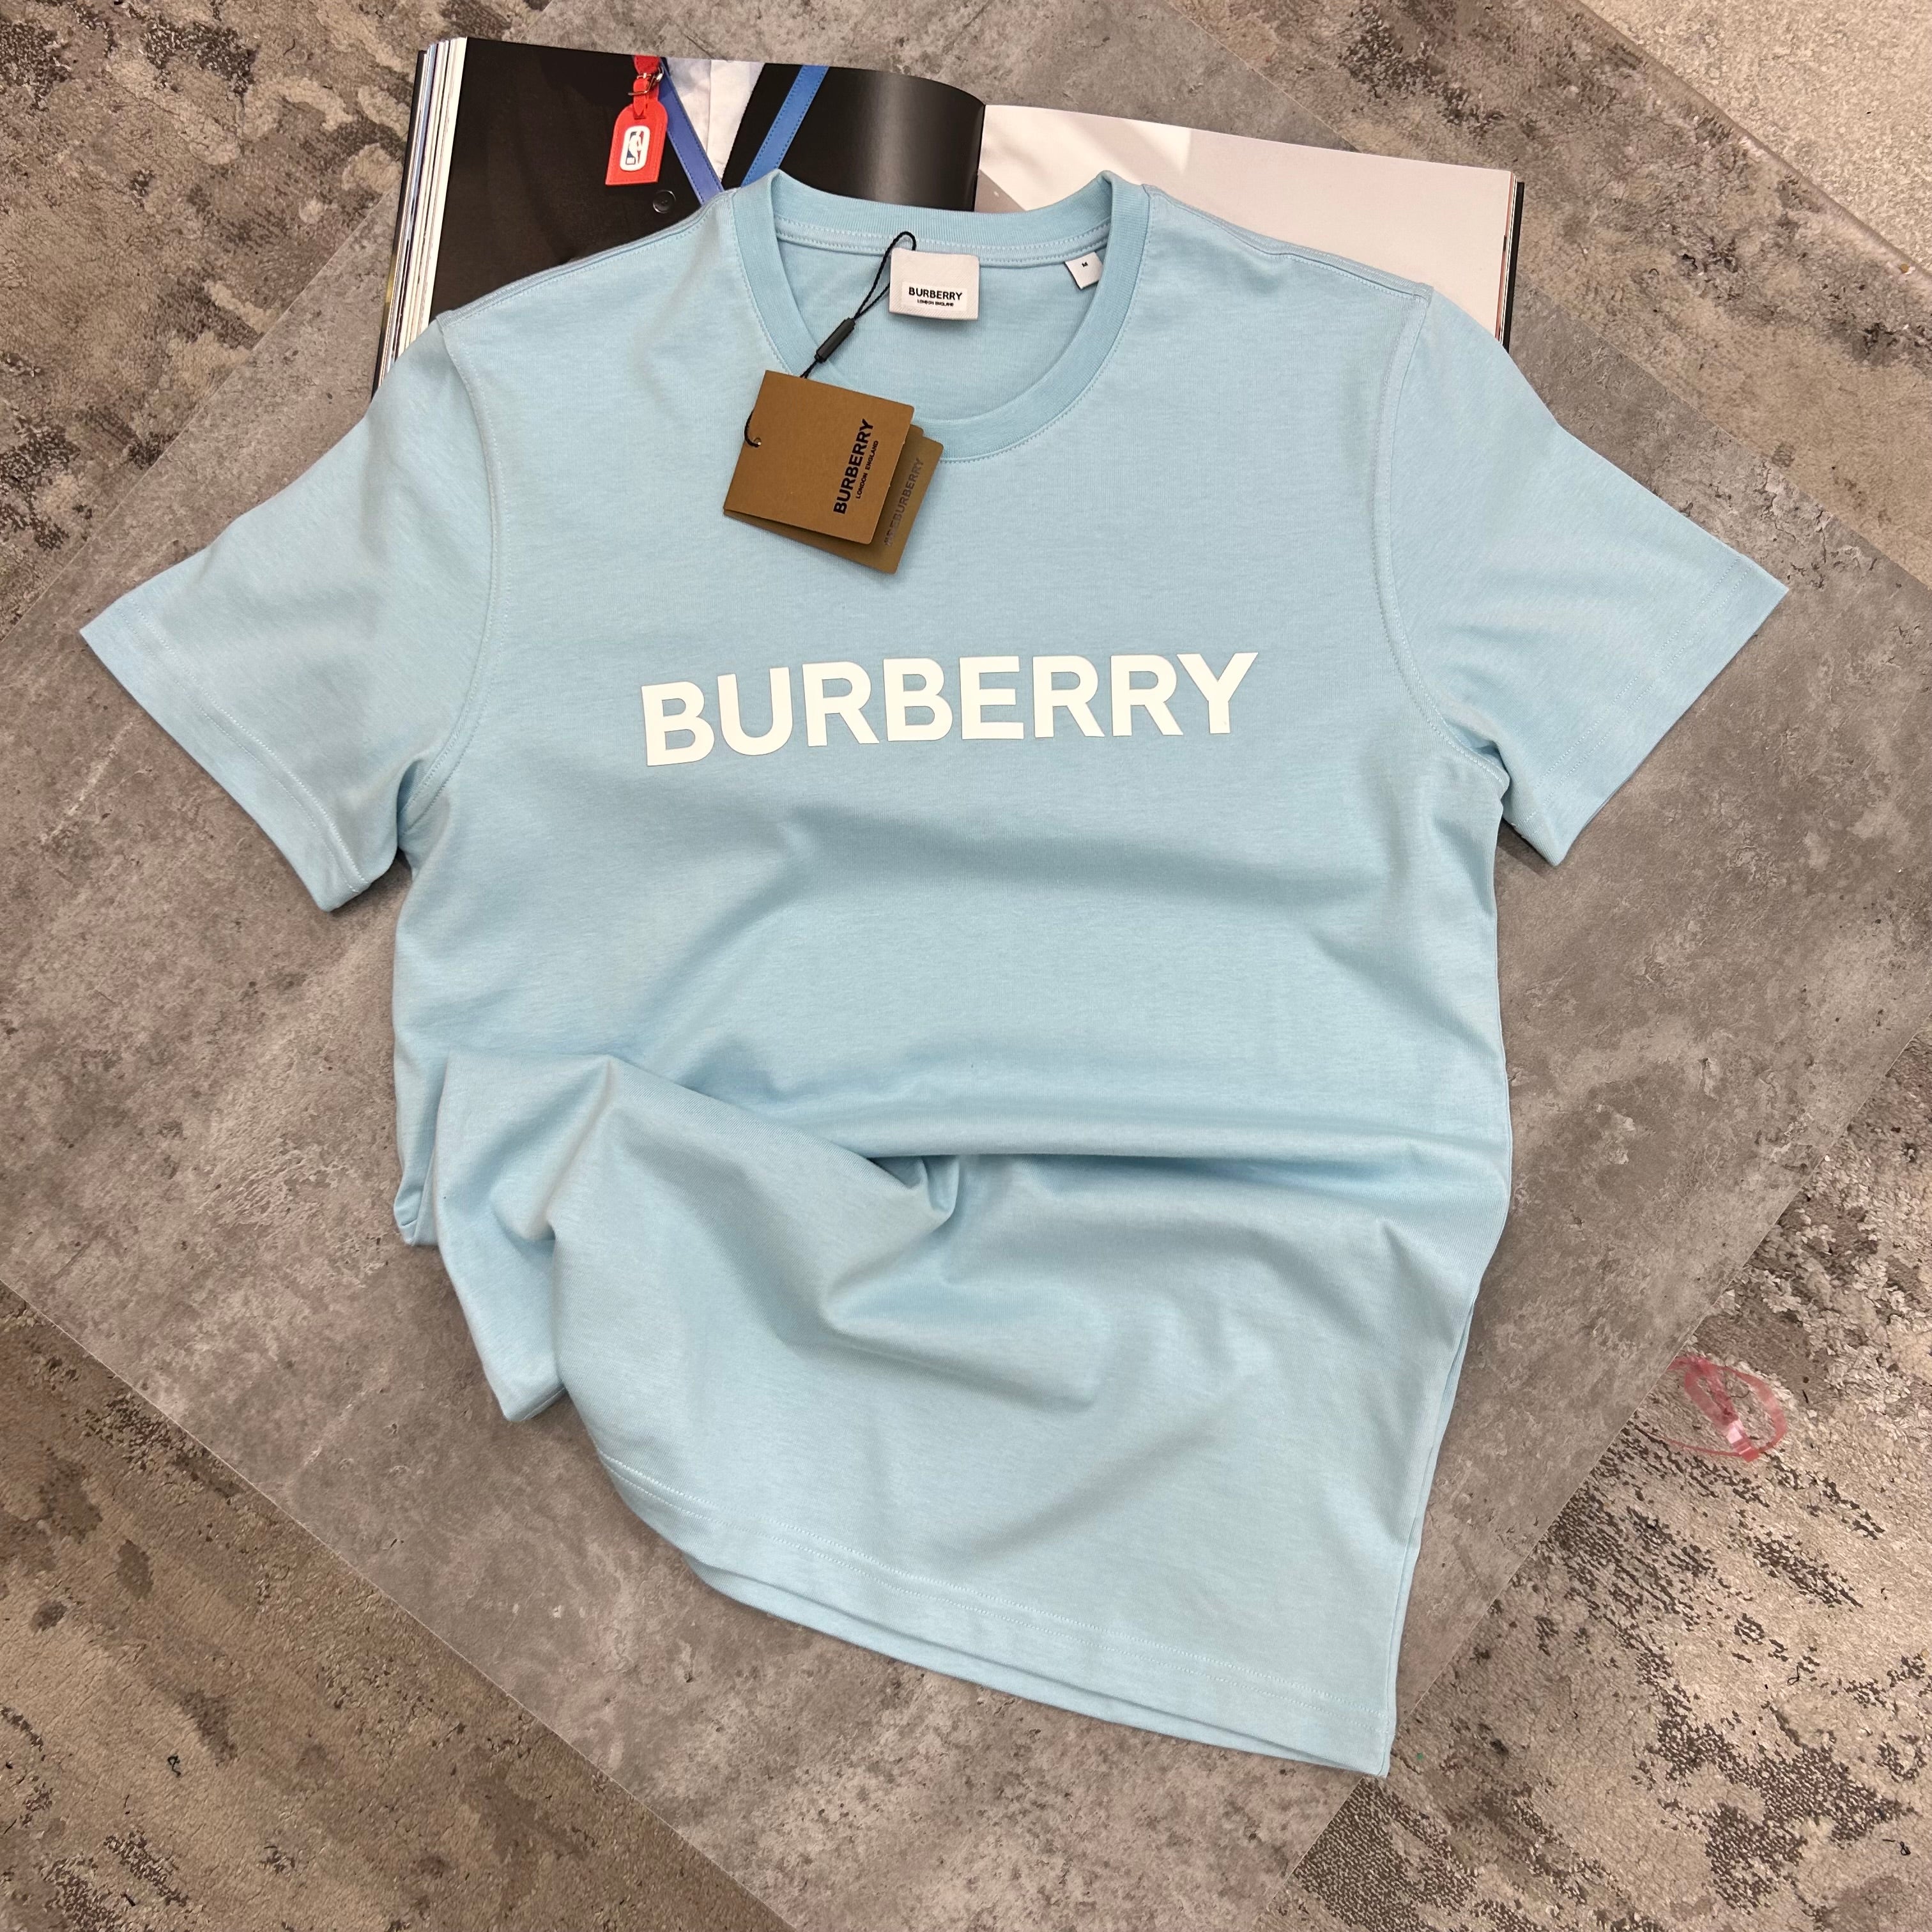 BURBERRY - T-SHIRT - SKY BLUE